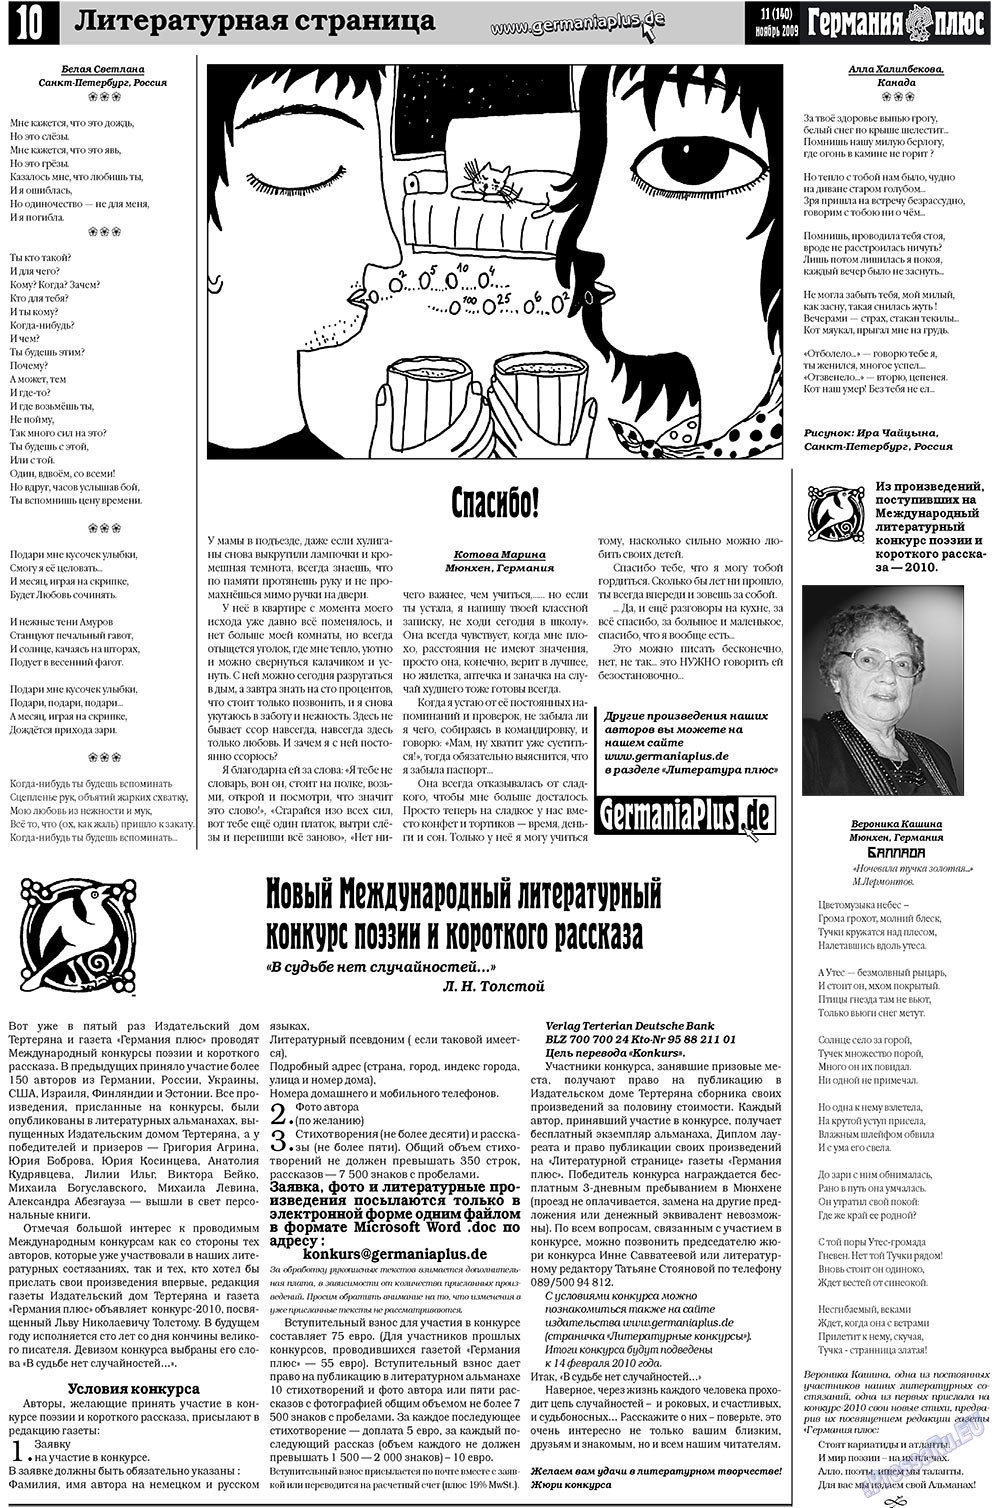 Германия плюс (газета). 2009 год, номер 11, стр. 10